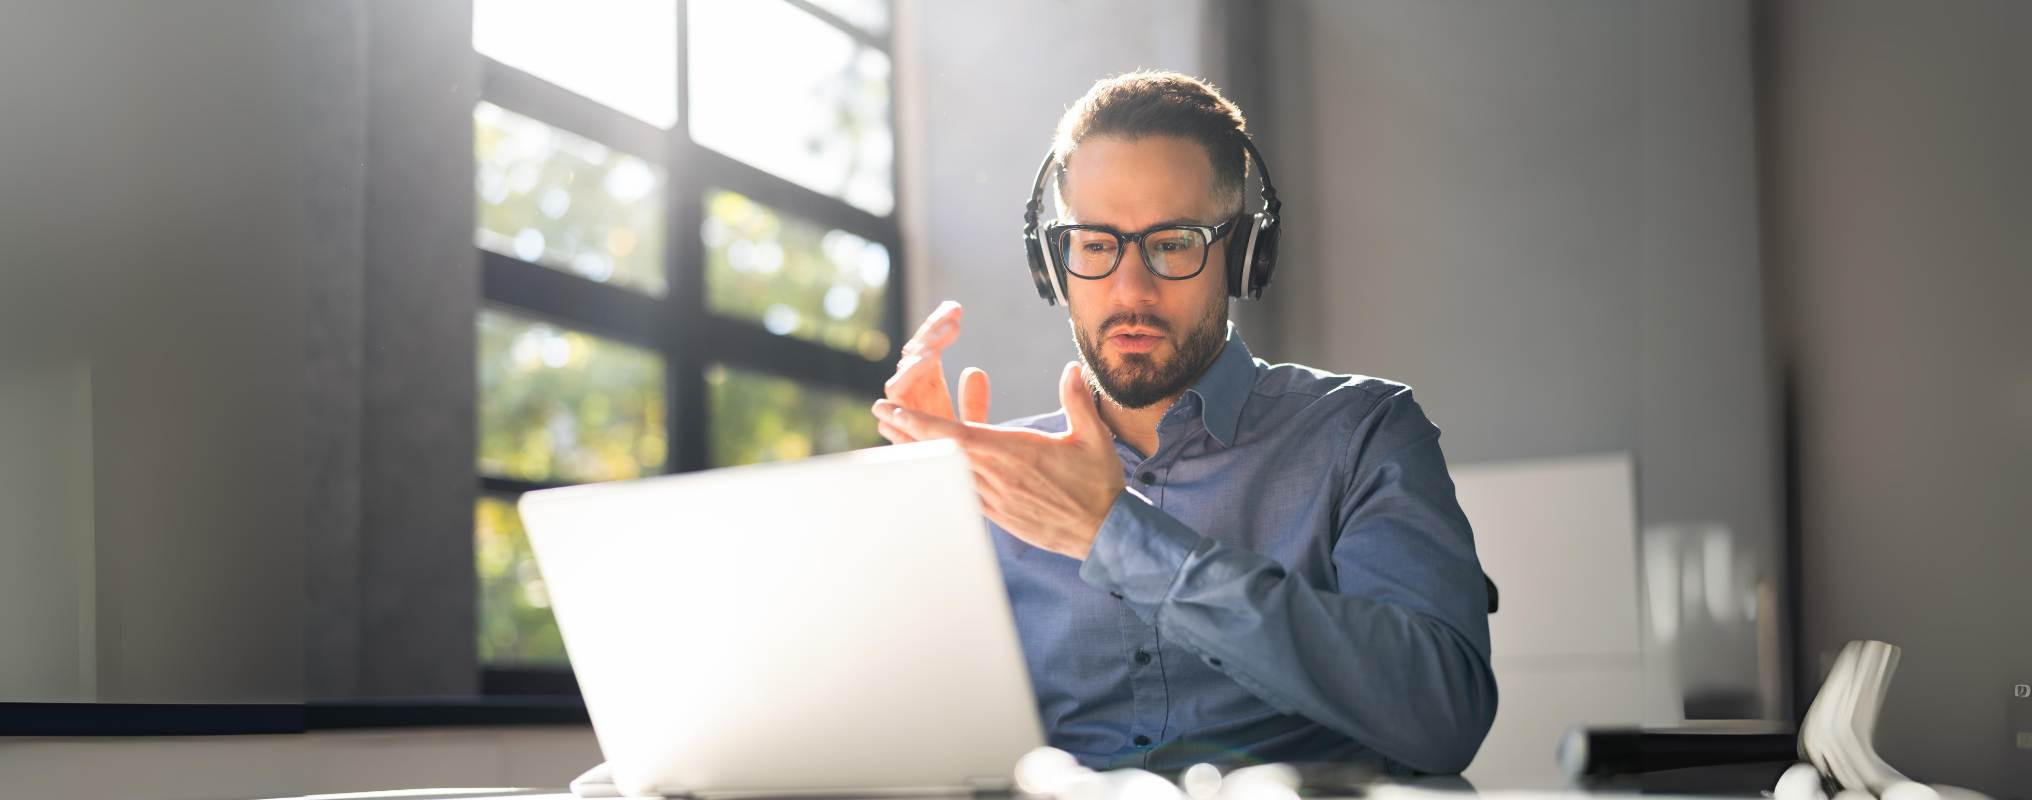 Mann sitzt mit Headset vor Computer und gestikuliert, ist offenbar in einem Onlinemeeting